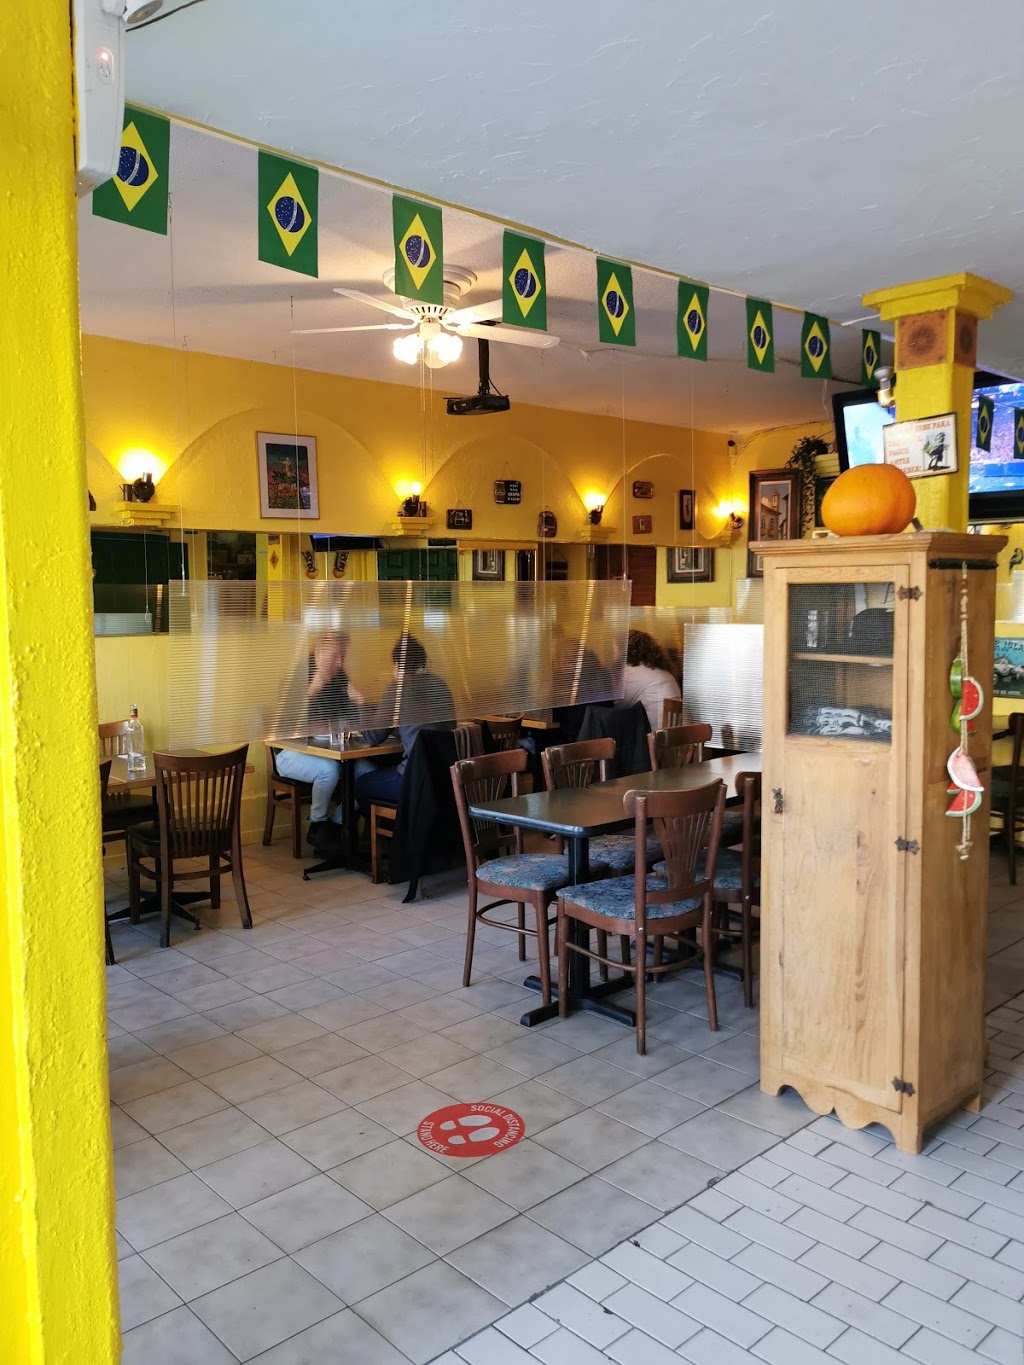 Boteco Brasil Restaurant | 2545 Nanaimo St, Vancouver, BC V5N 5E6, Canada | Phone: (778) 379-7995